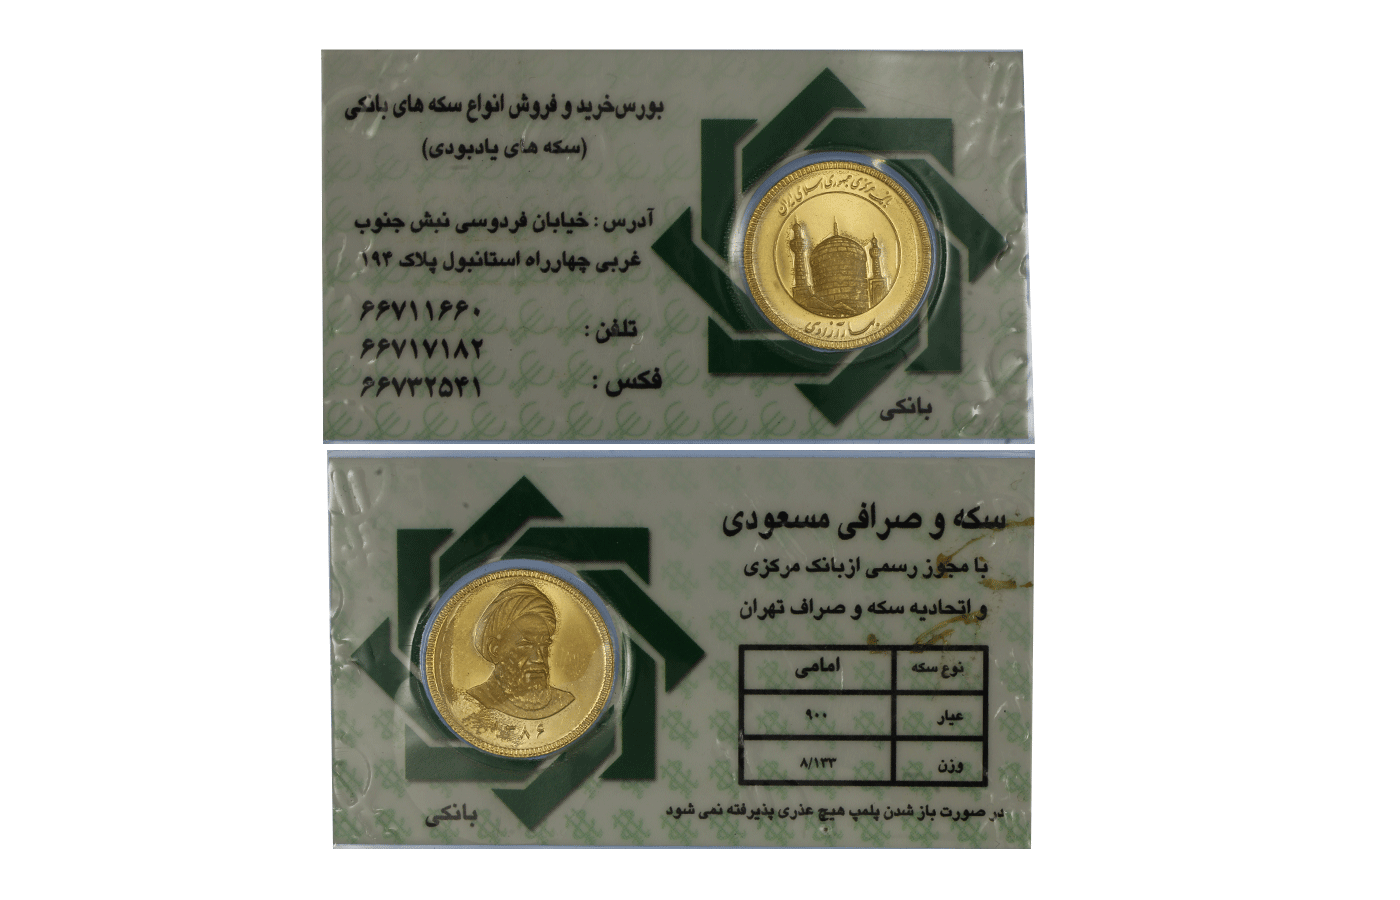 "Ajatollah Khomeini" - Azadi gr. 8,14 in oro 900/